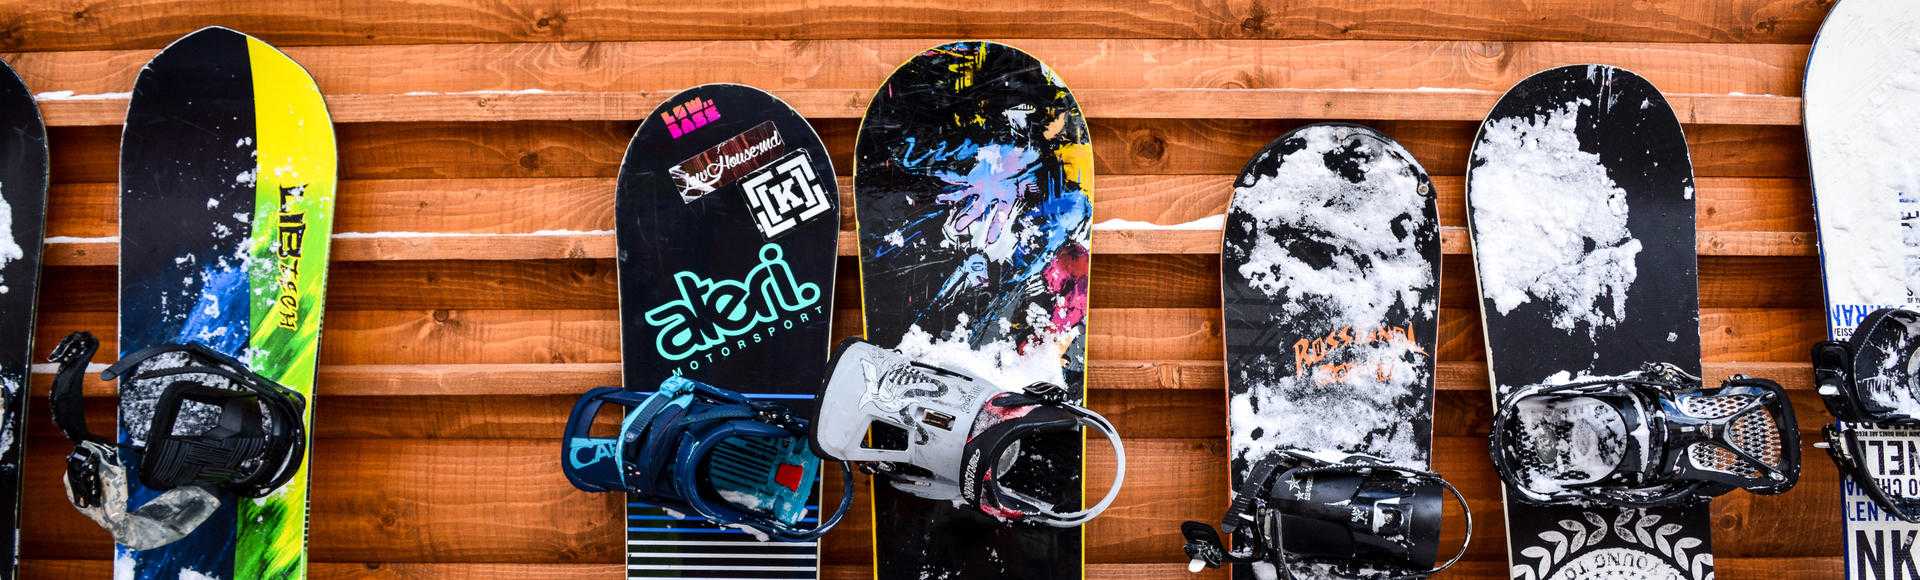 Alquiler-esqui-snowboard_Alquiler-material_Sierra-nevada_Buendia-Play